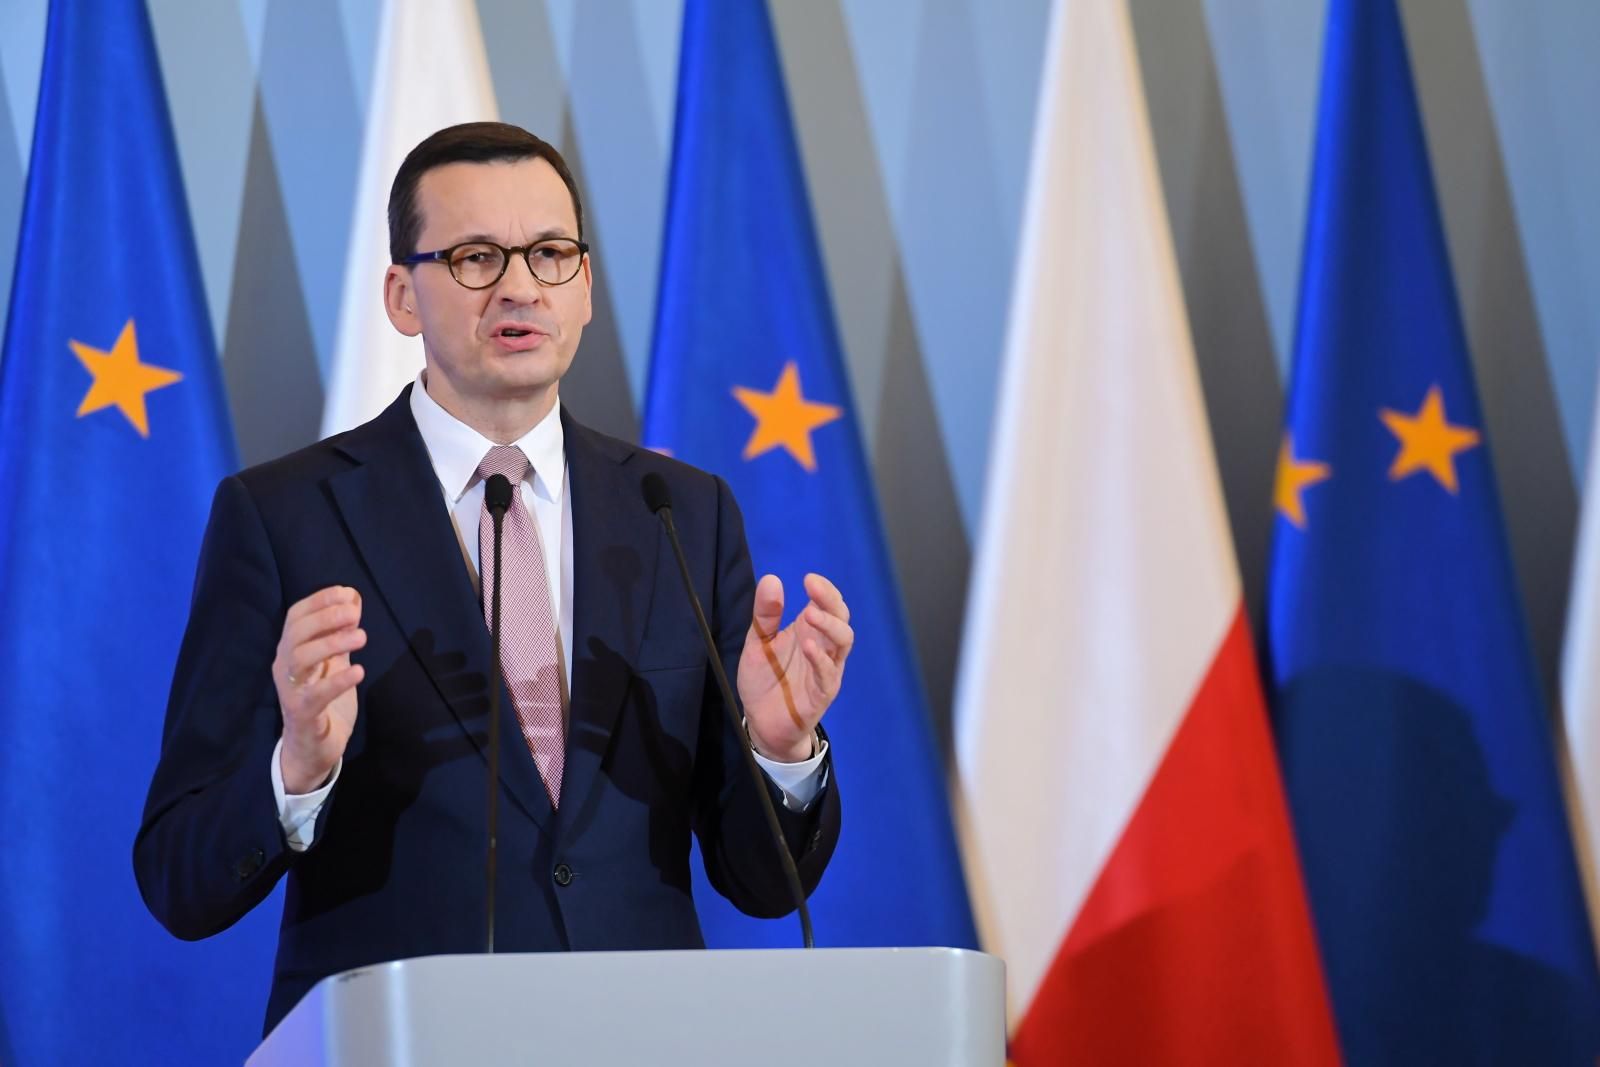 ЕС готовит пакет антироссийских санкций "мощнее", чем в 2014 году, – премьер Польши